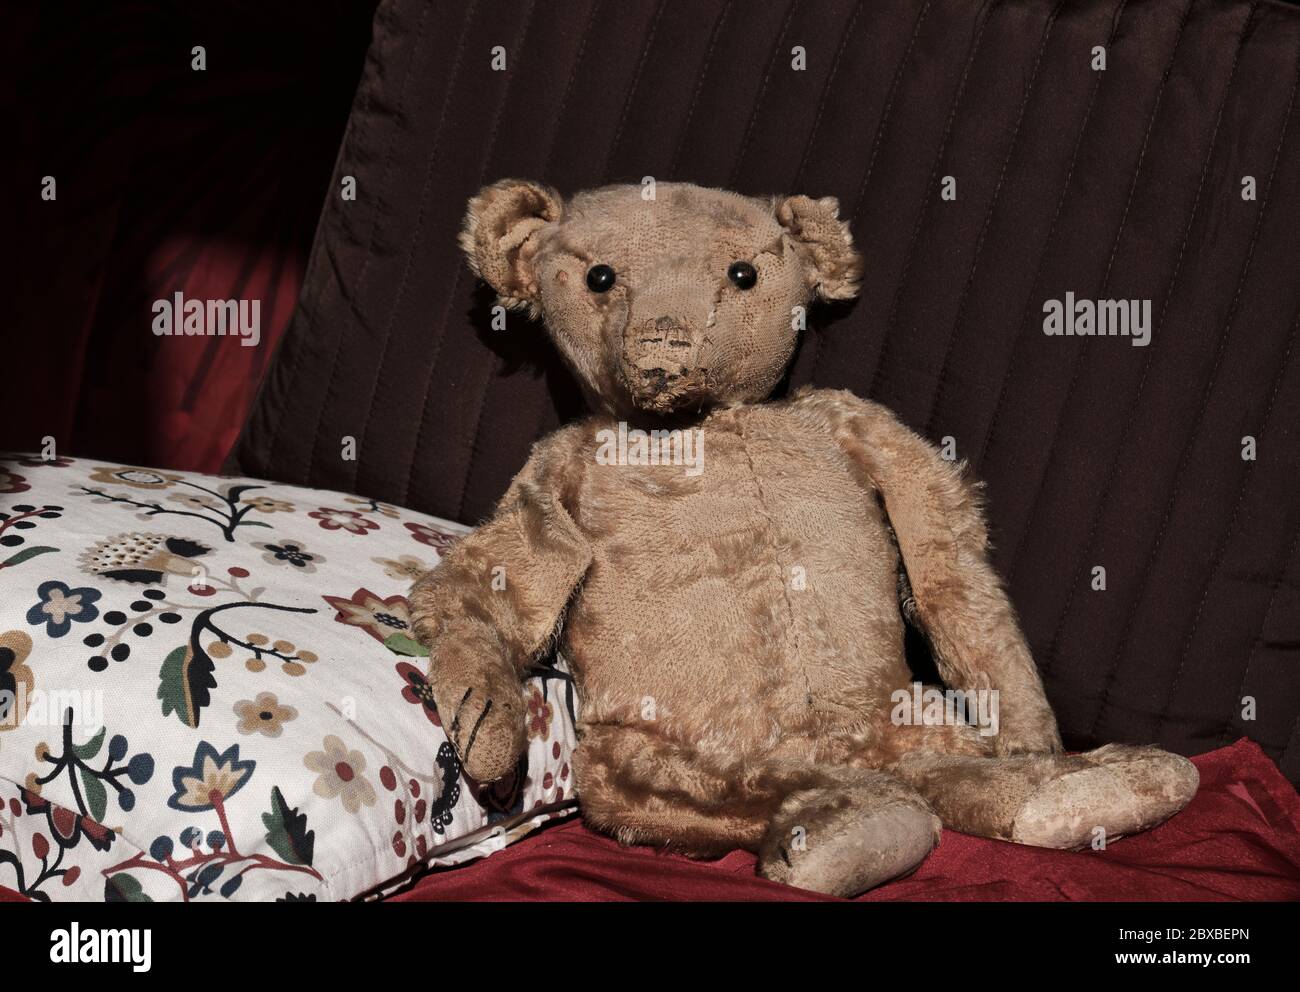 Un ours en peluche usé et bien utilisé au tournant des années 1900. Probablement un ours en peluche original assis sur des oreillers regardant l'appareil photo. Banque D'Images